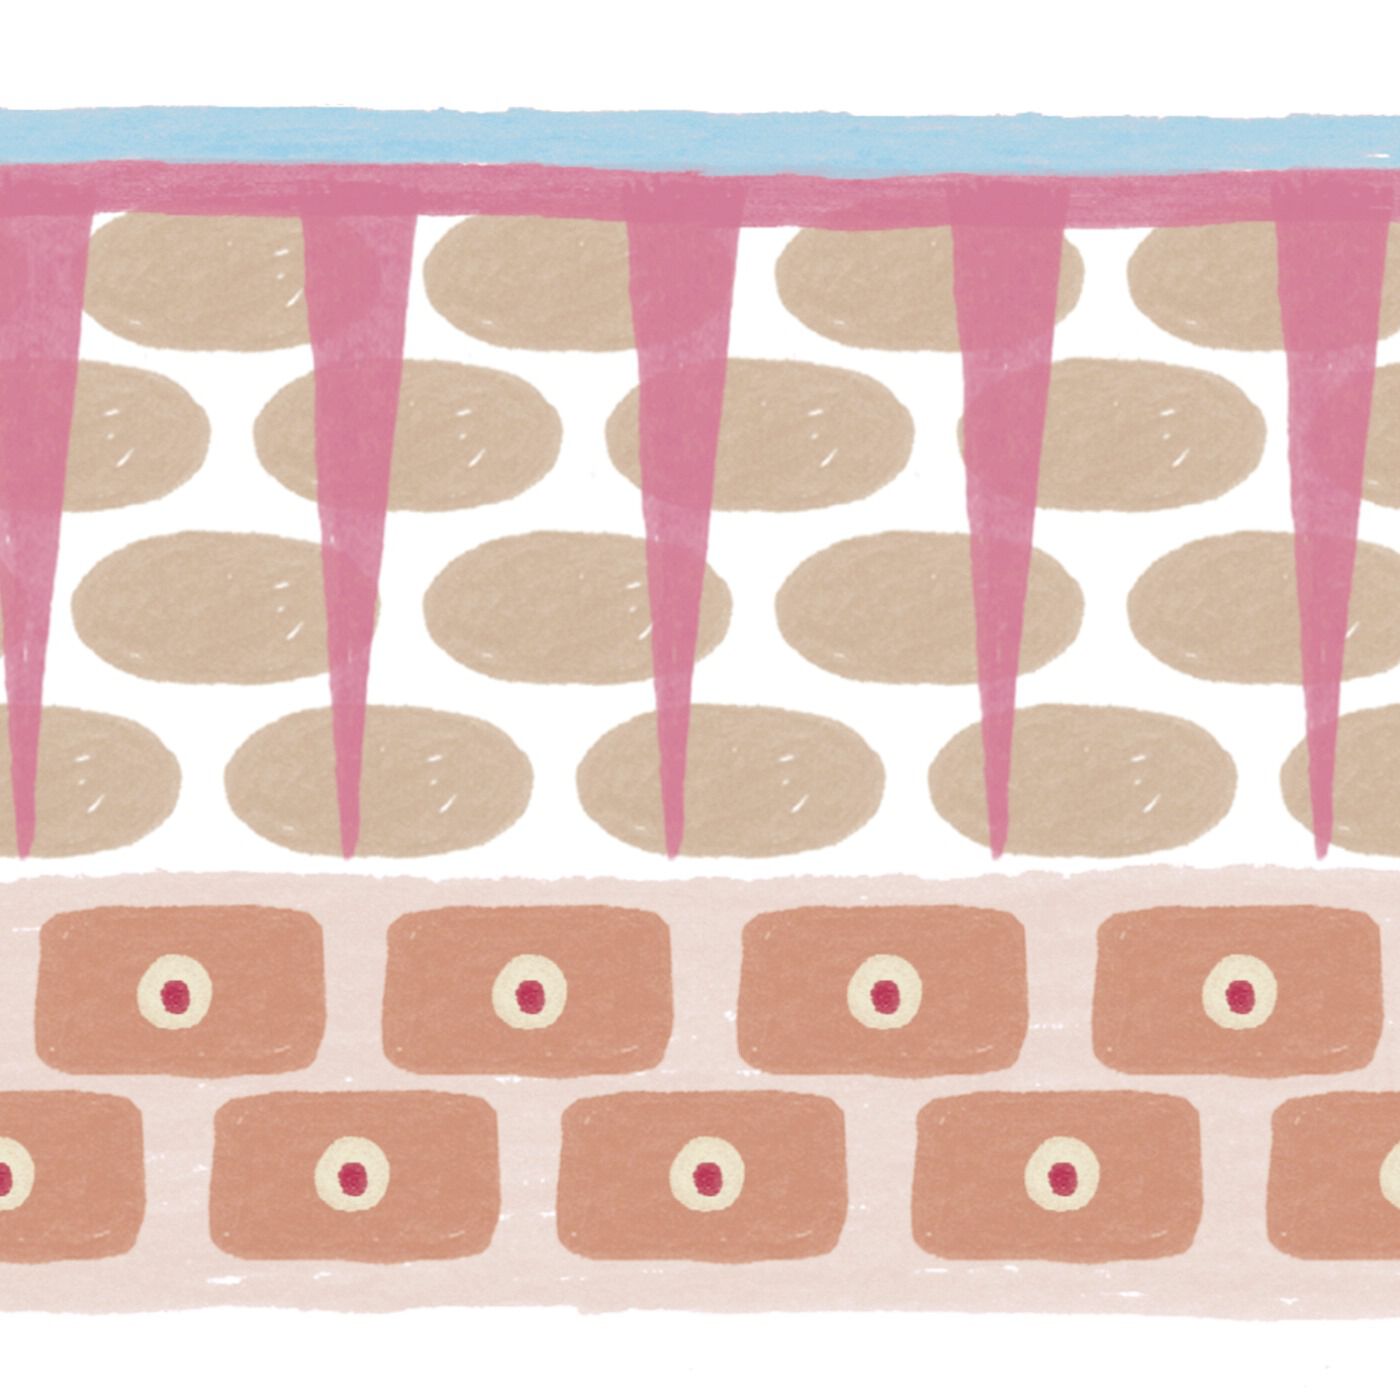 BEAUTY PROJECT|モットラボ　リップショット〈1回分〉の会|マイクロニードルが、塗るだけでは唇に浸透しづらい美容成分を角質層まで注入。(※図のピンク色はマイクロニードルを表しています。)